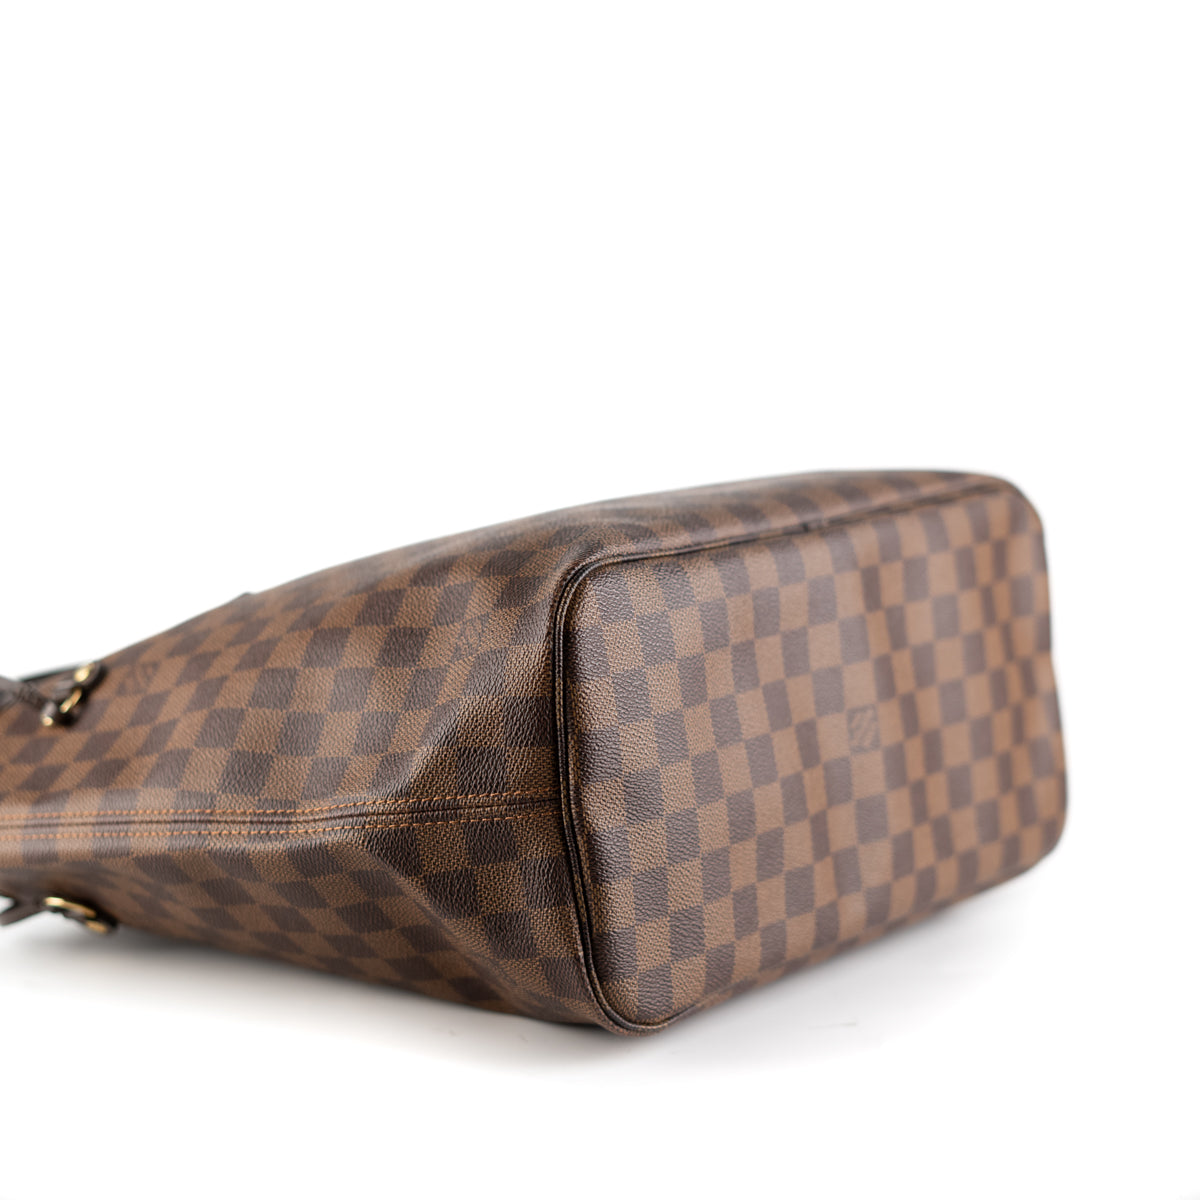 Louis Vuitton Ascot Damier Ebene Bag - THE PURSE AFFAIR